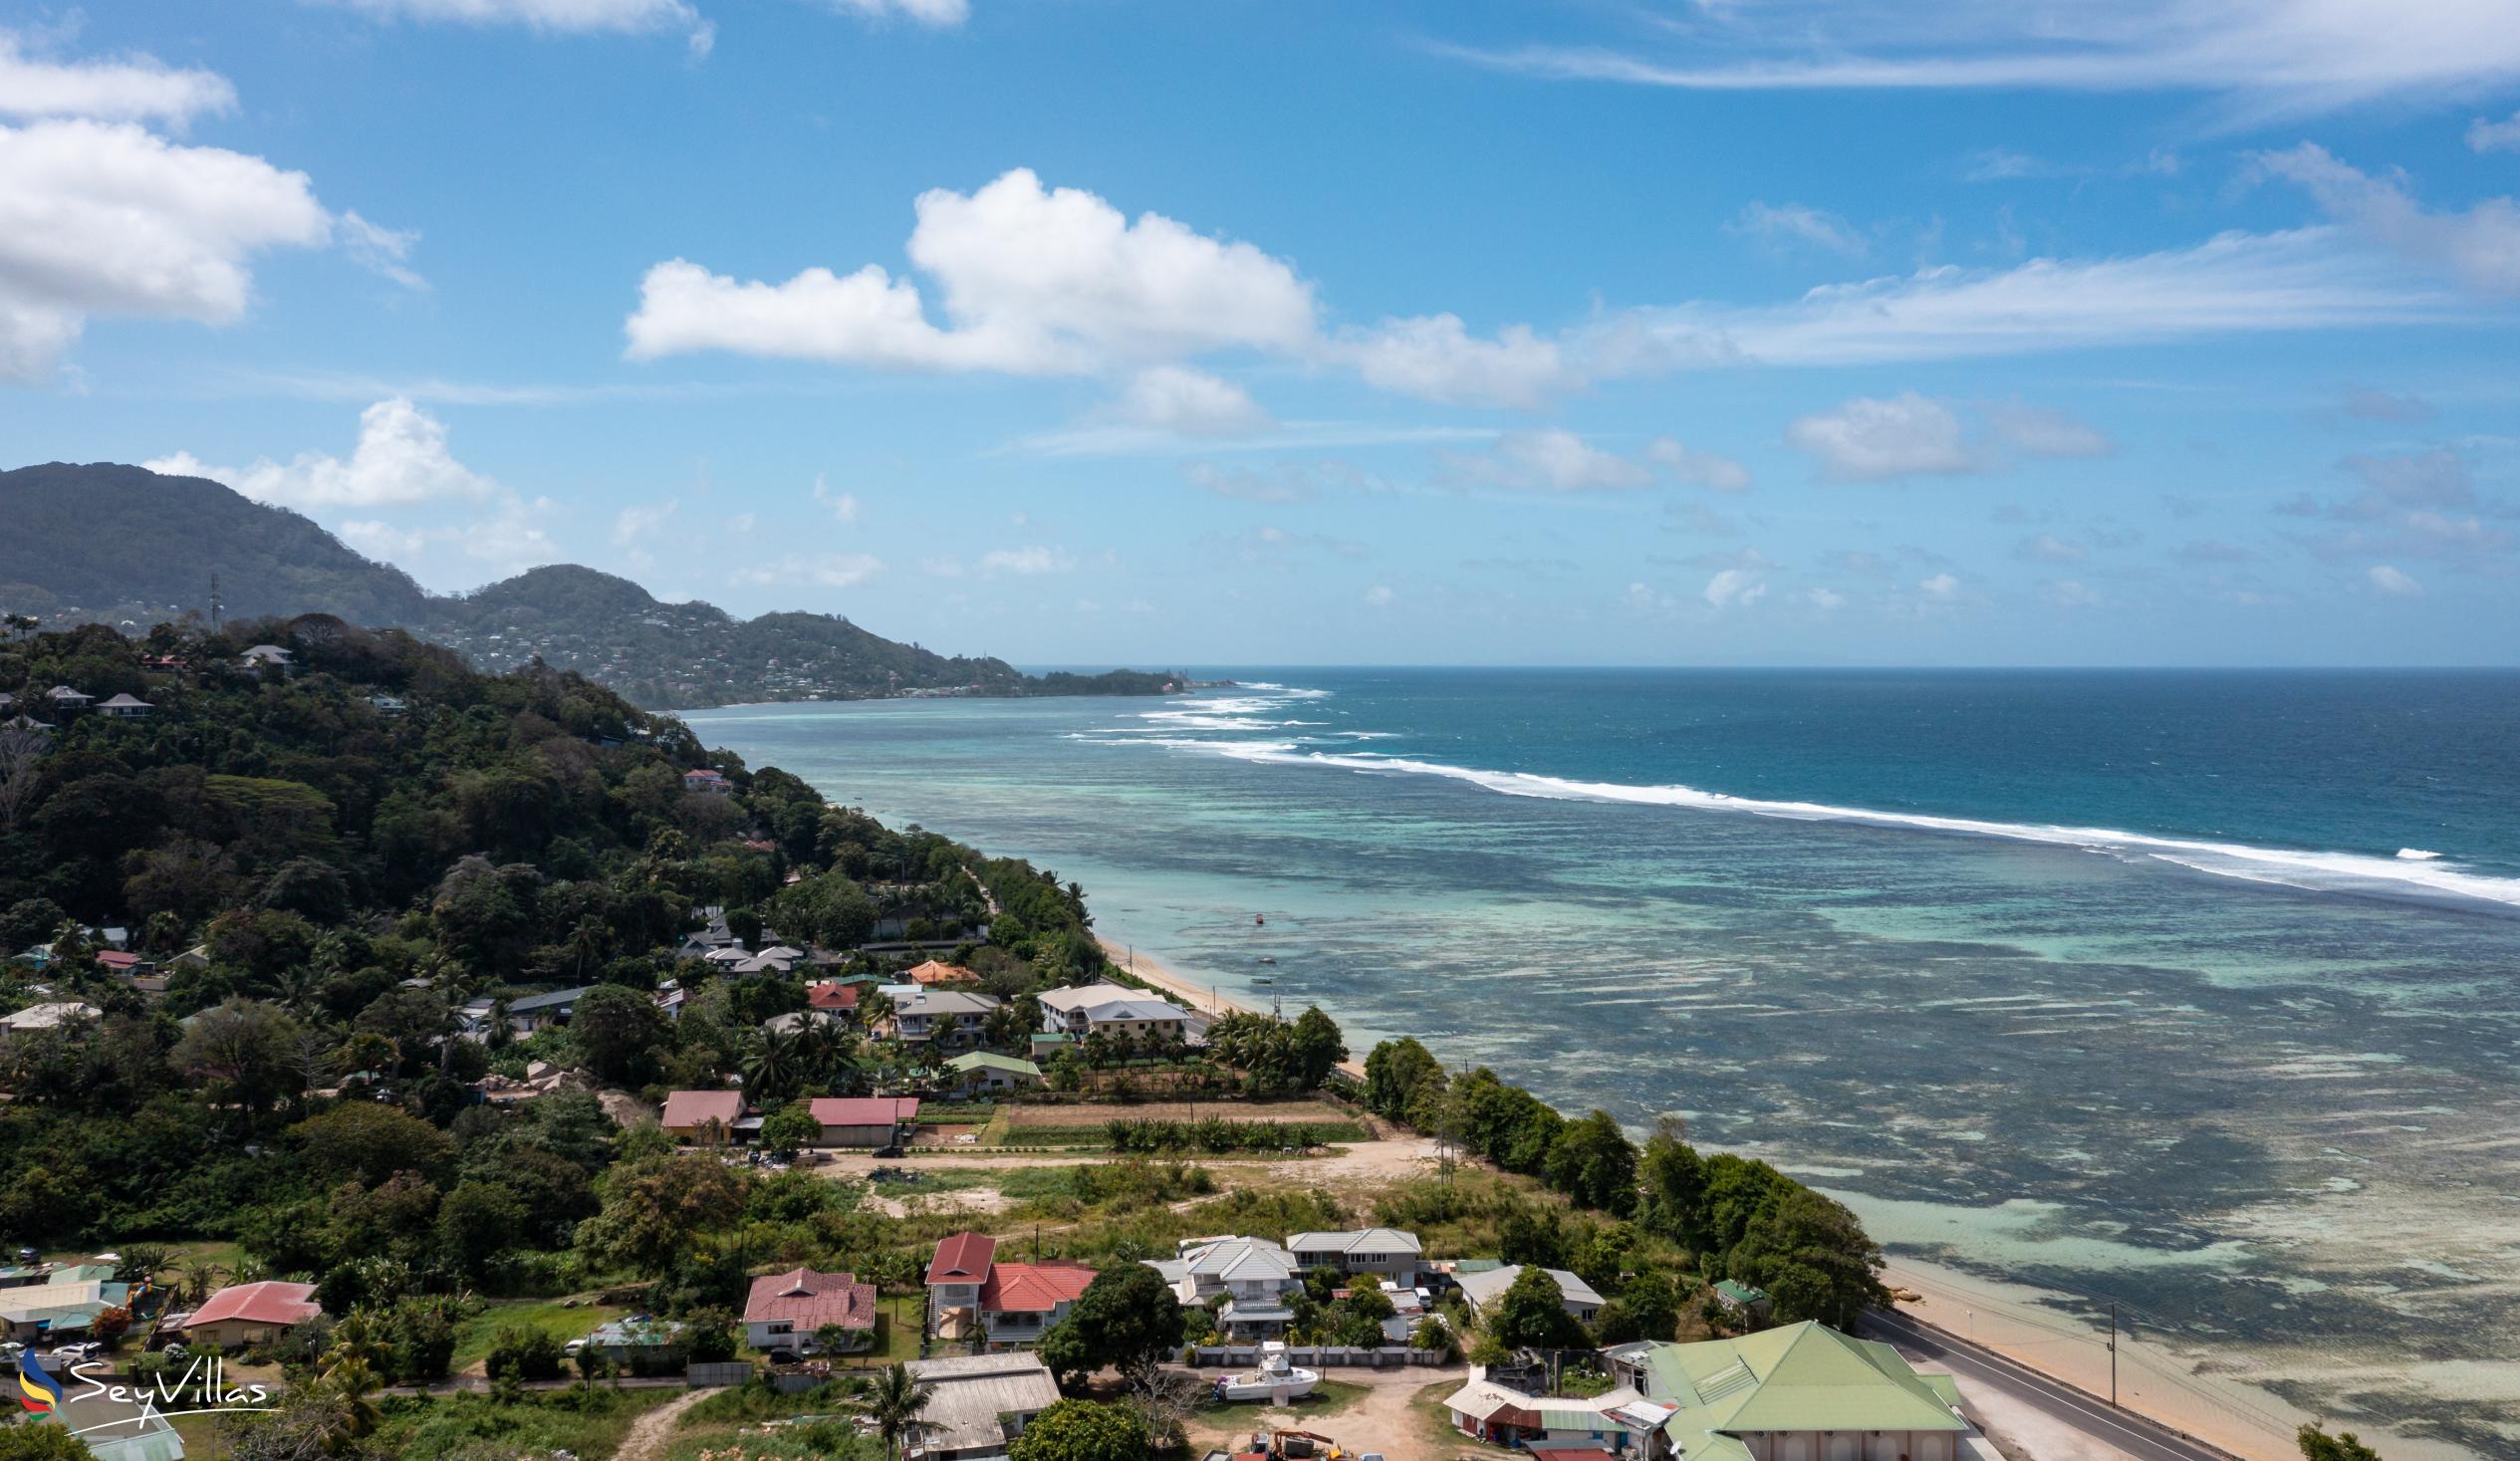 Photo 18: Farida Apartments - Location - Mahé (Seychelles)